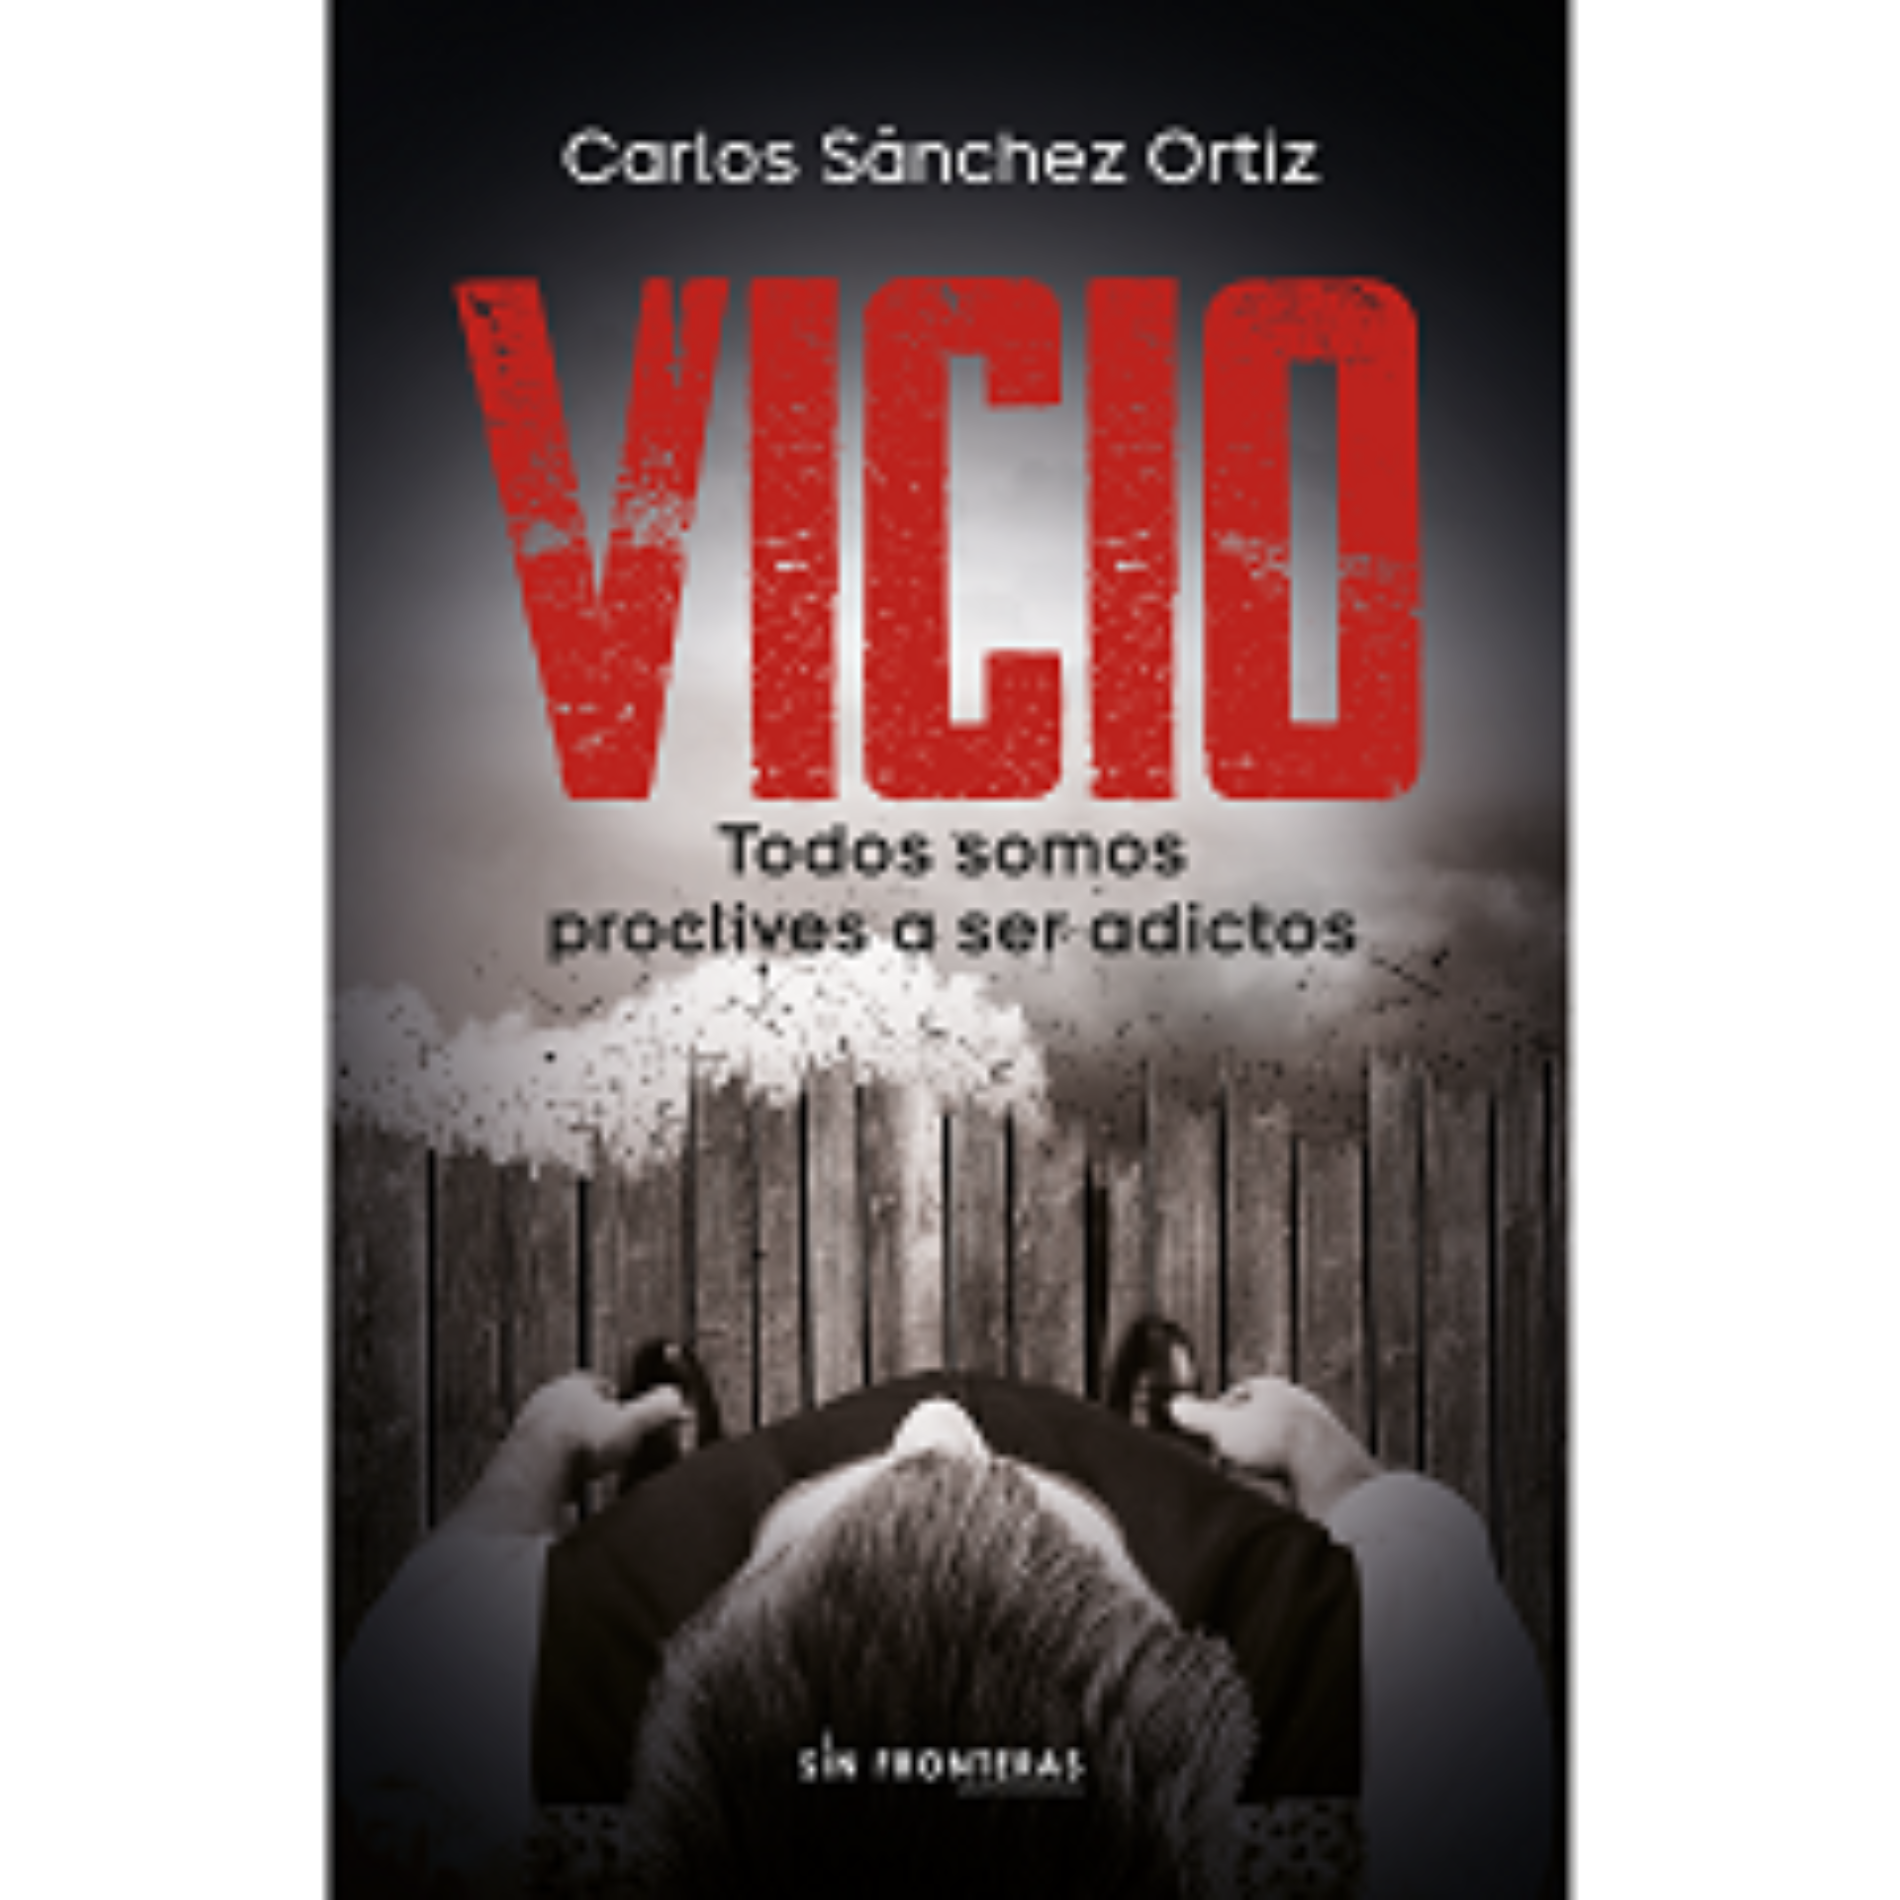 Carlos Sánchez Ortiz y su libro VICIO: Una guía para enfrentar las adicciones